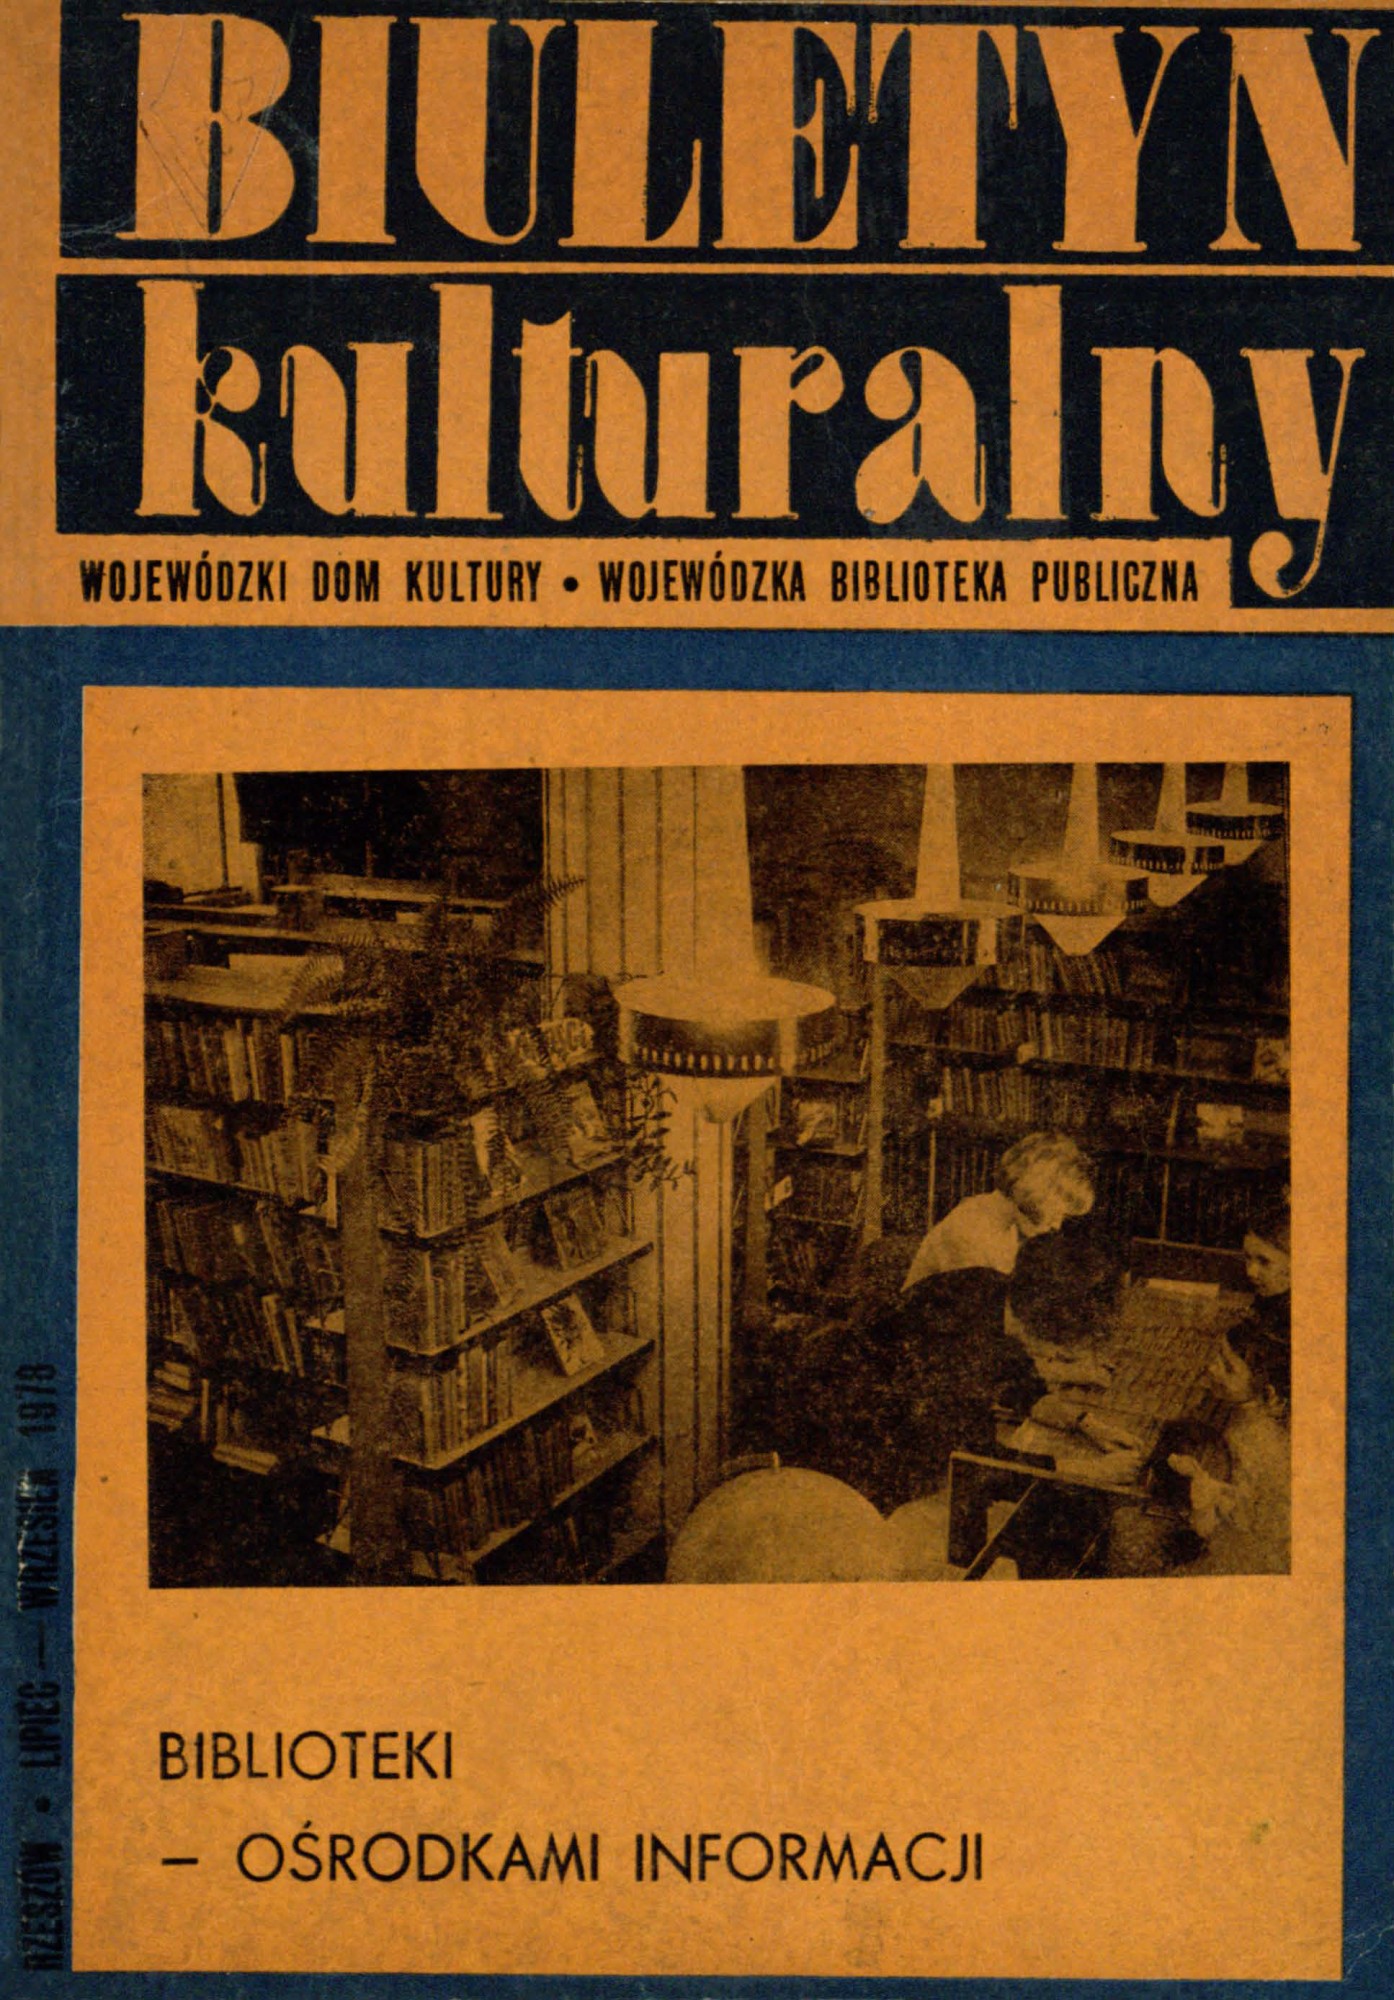 zdjęcie okładki czasopisma - Biuletyn Kulturalny. 1978, R. 1, nr 3 (lipiec-wrzesień)